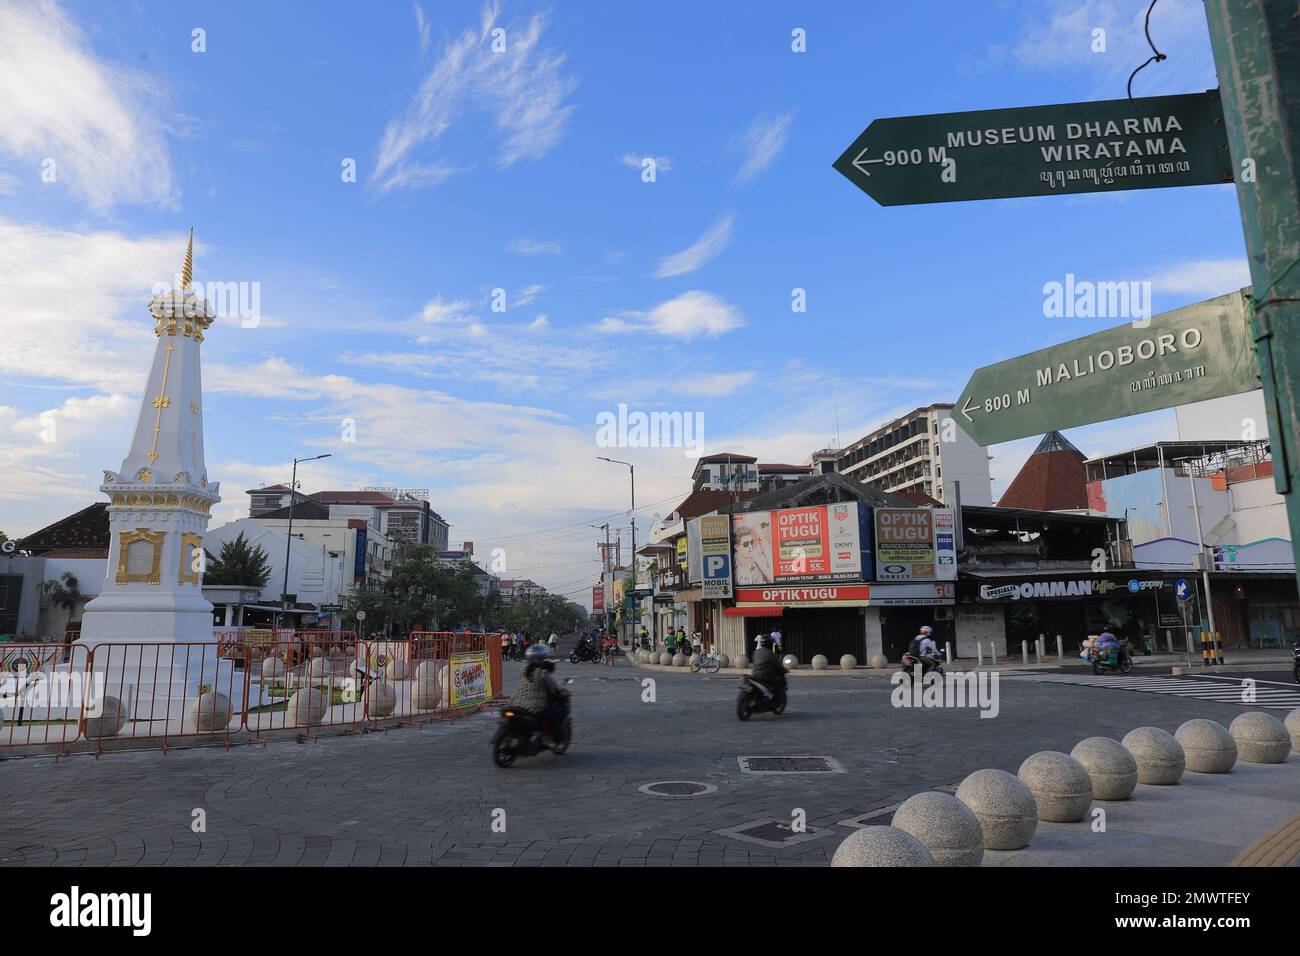 Panneaux de rue Malioboro au monument Yogyakarta (indonésien : Tugu Yogyakarta). Yogyakarta, Indonésie - 05 mars 2021. Banque D'Images